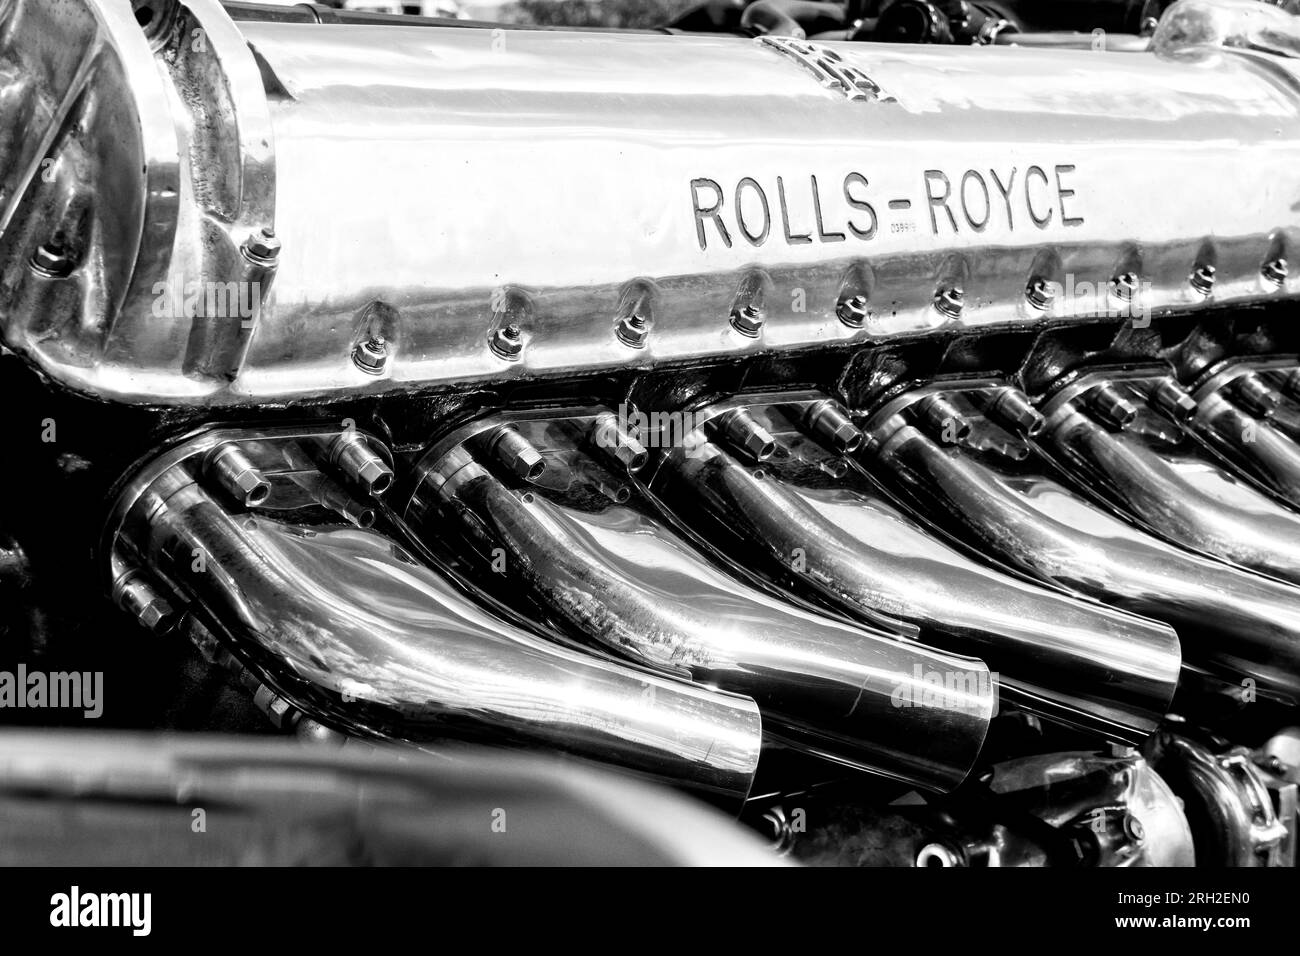 Rolls Royce Merlin Aero Engine utilisé dans les chasseurs Spitfire et Hurricane de la Seconde Guerre mondiale. Banque D'Images